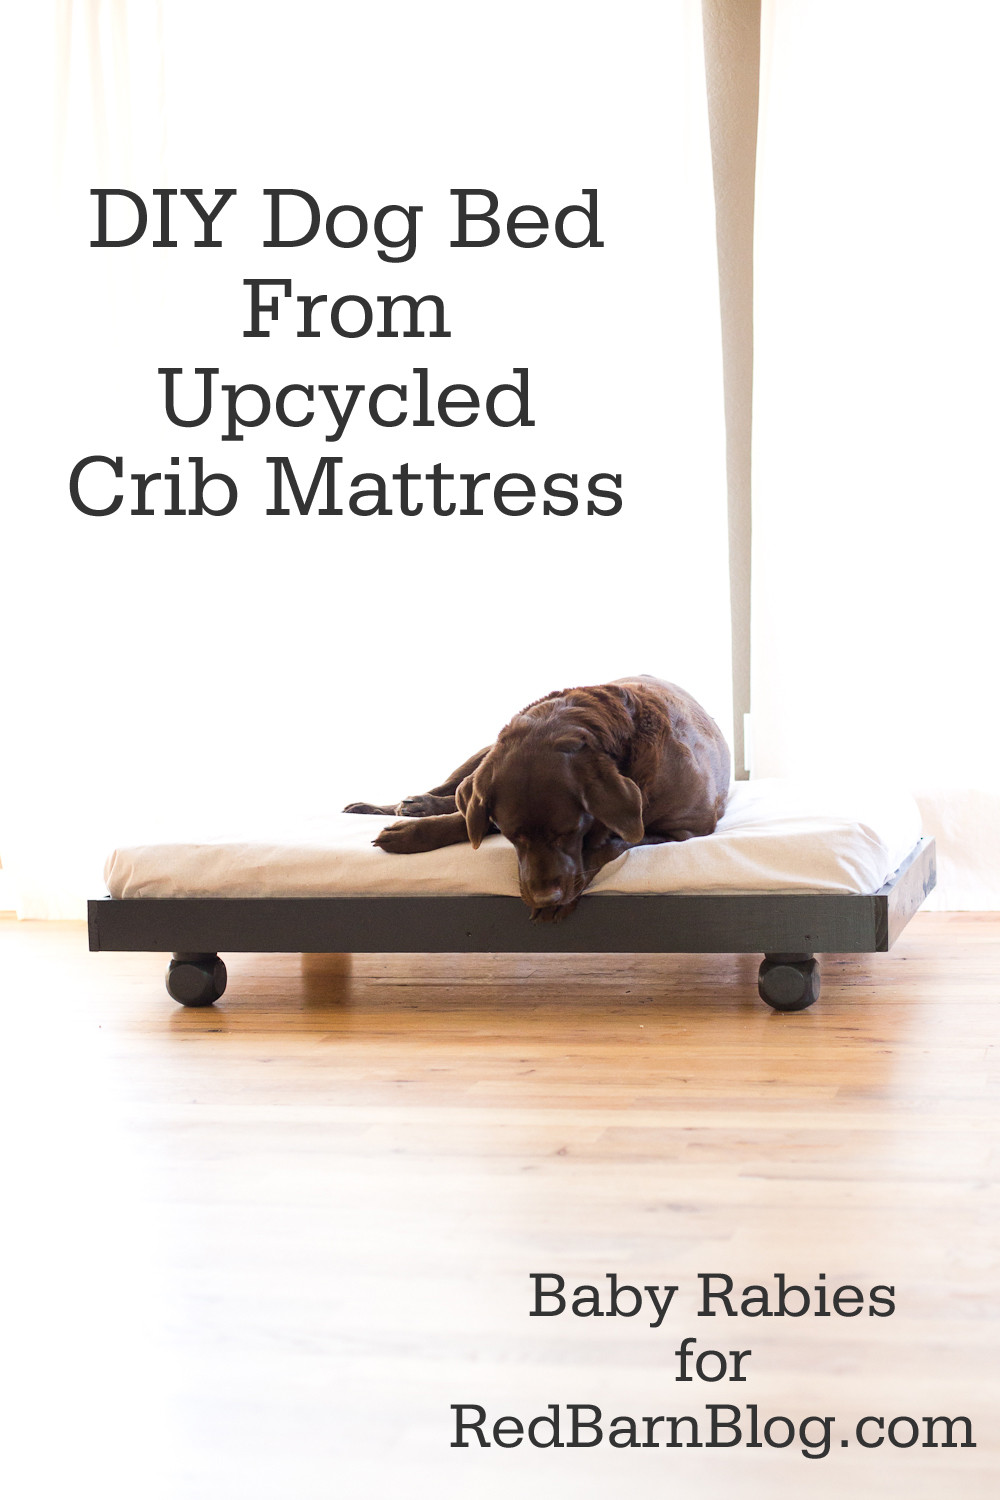 DIY Dog Cot
 DIY Dog Bed from Upcycled Crib Mattress